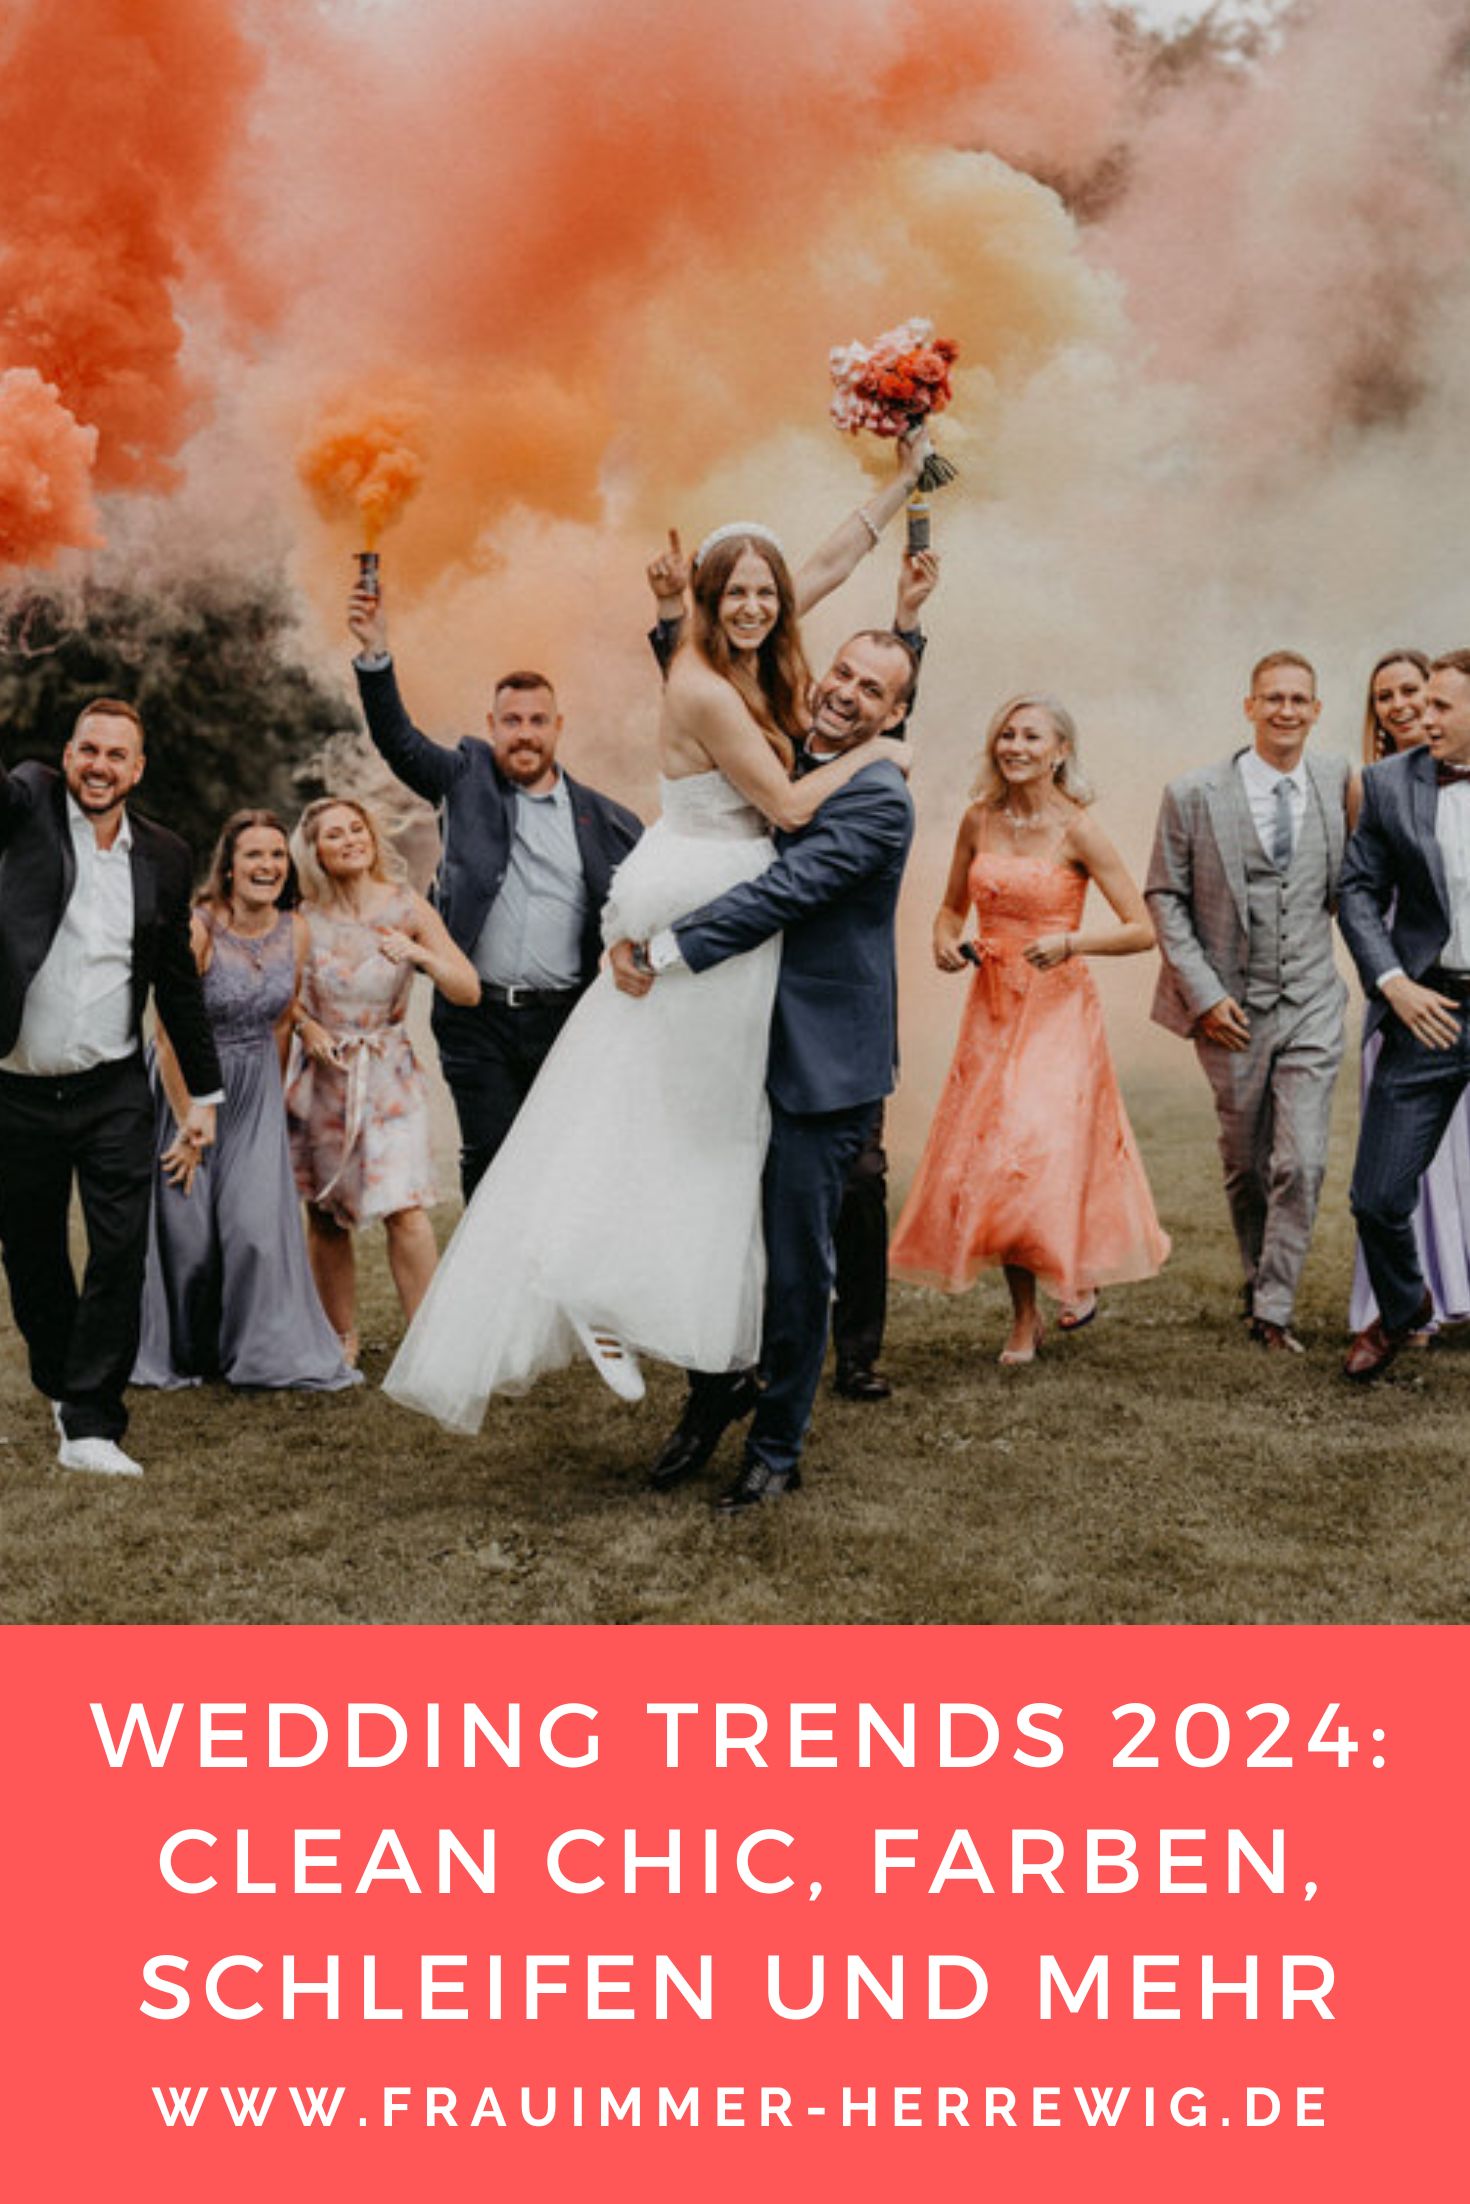 Wedding trends 2024 – gesehen bei frauimmer-herrewig.de